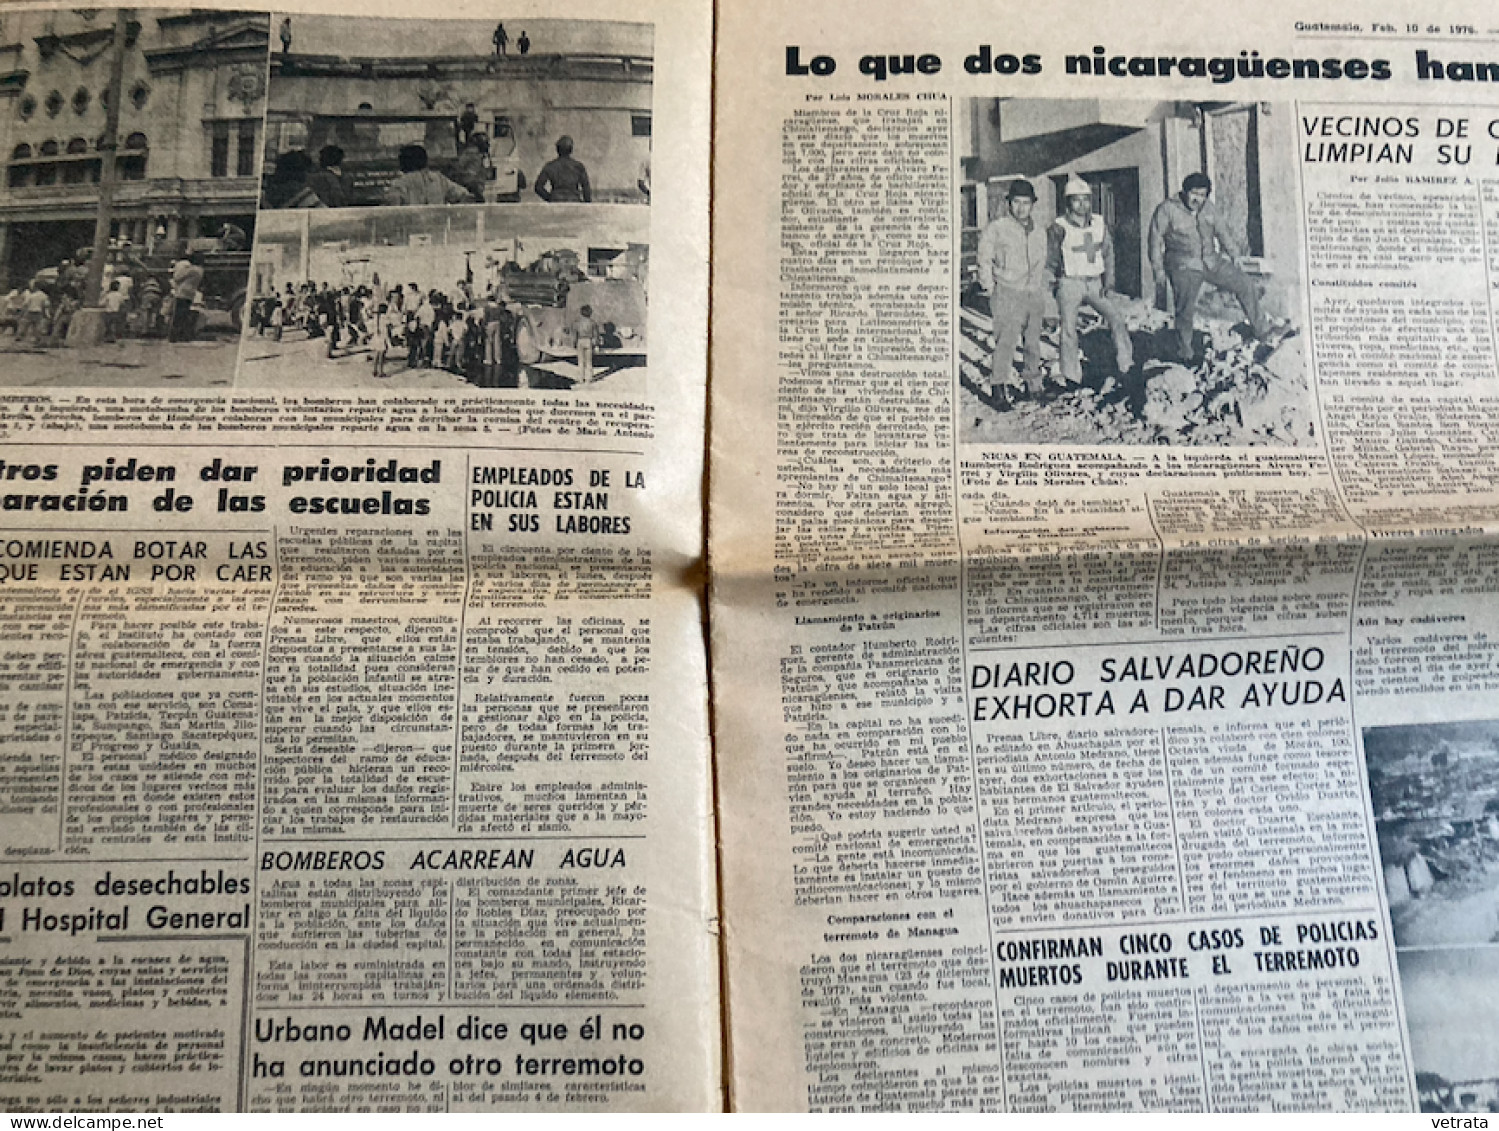 Prensa Libre N° 7482 Du 10/02/76 : Quotidien Guatemala (Lors Du Tremblement De Terre) - [1] Until 1980